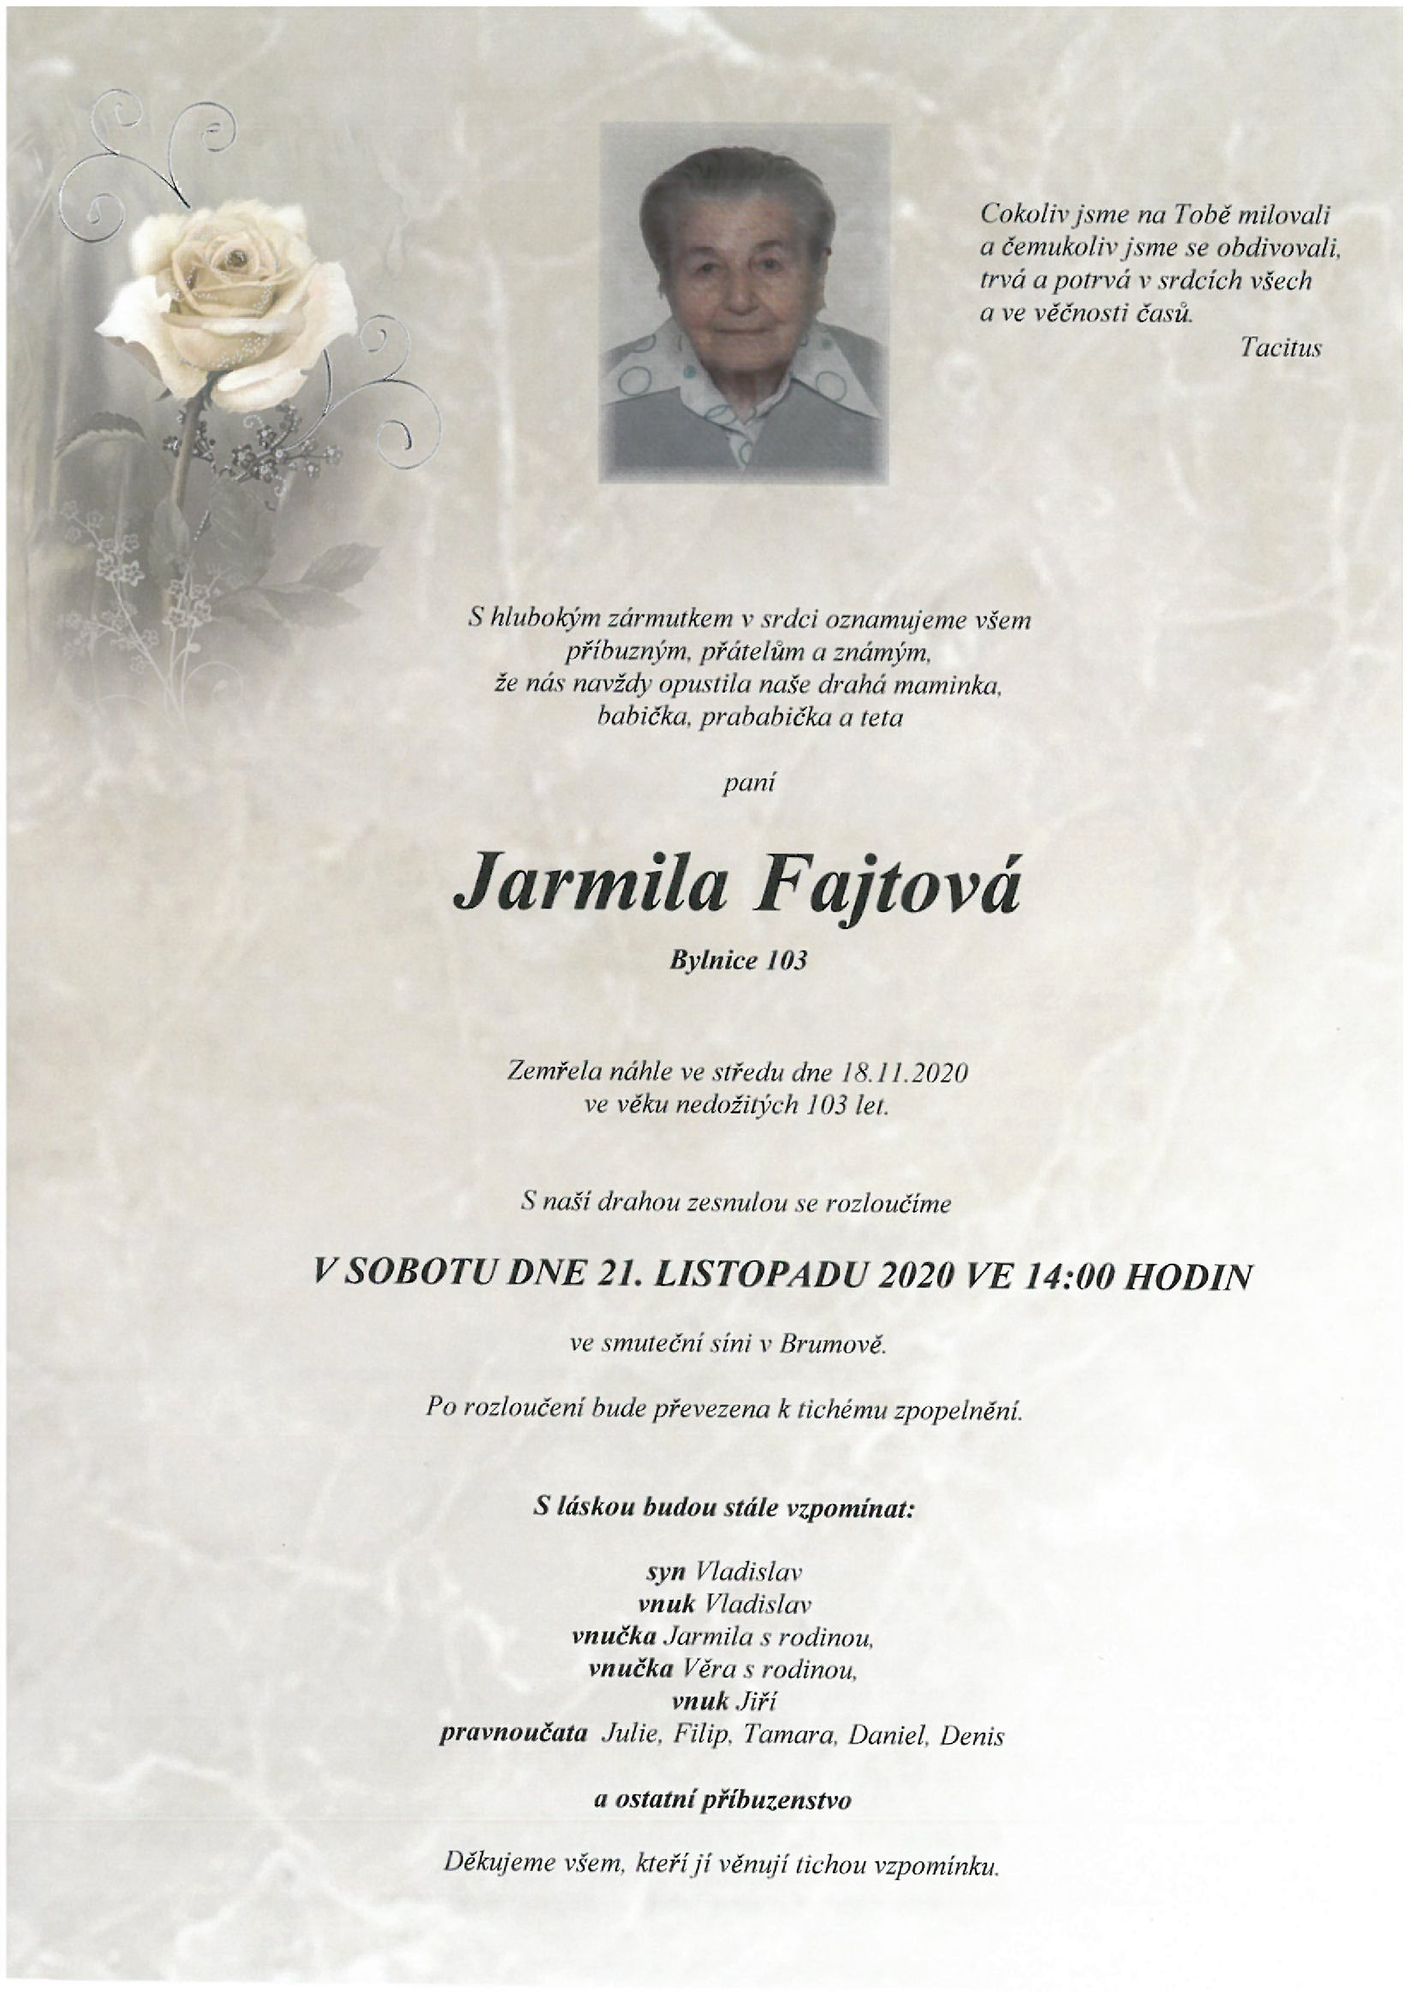 Jarmila Fajtová